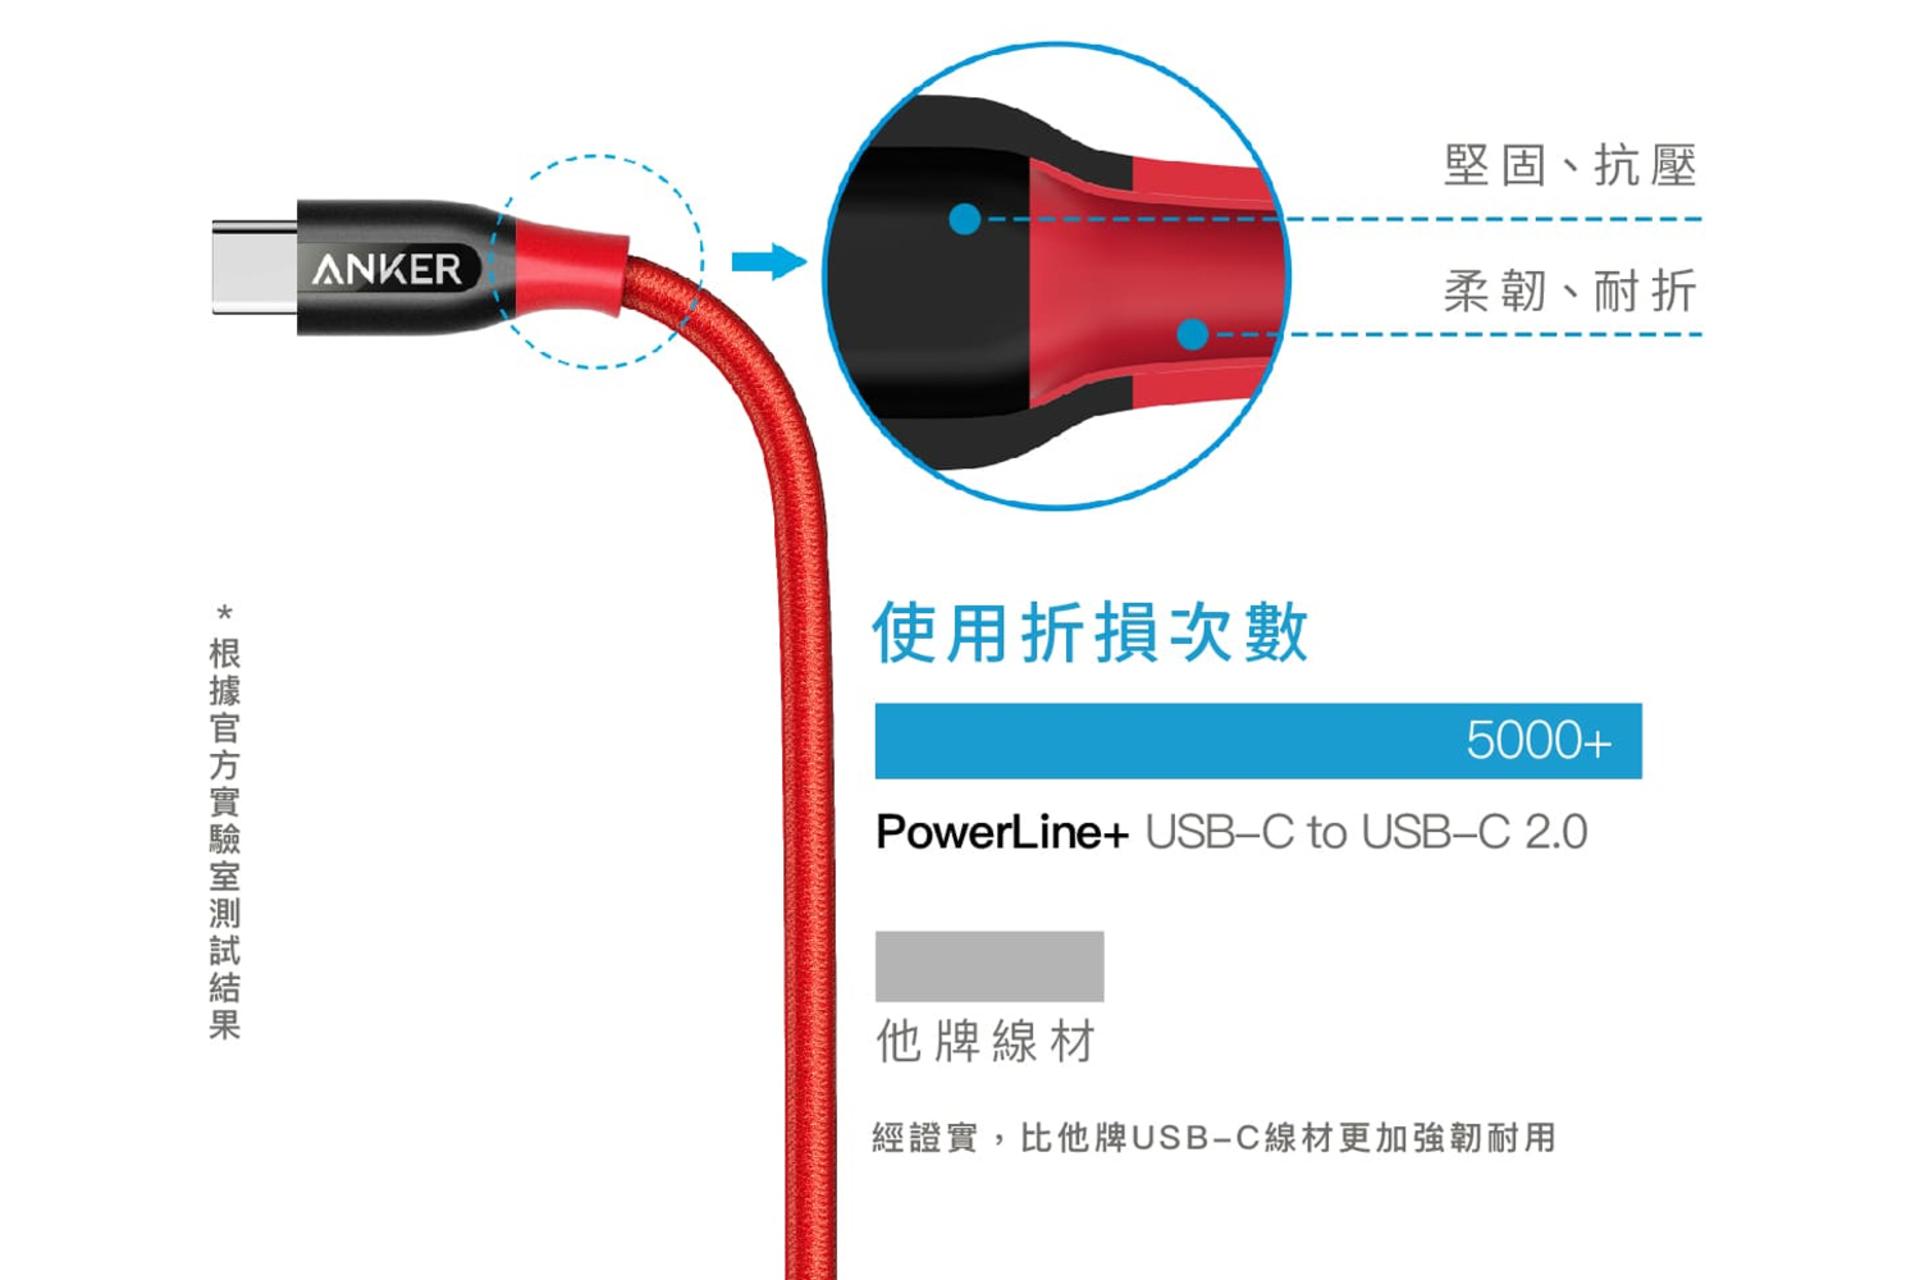 مرجع متخصصين ايران طراحي كابل شارژ USB انكر Type-C به Type-C مدل +A8187 PowerLine با طول 0.9 متر